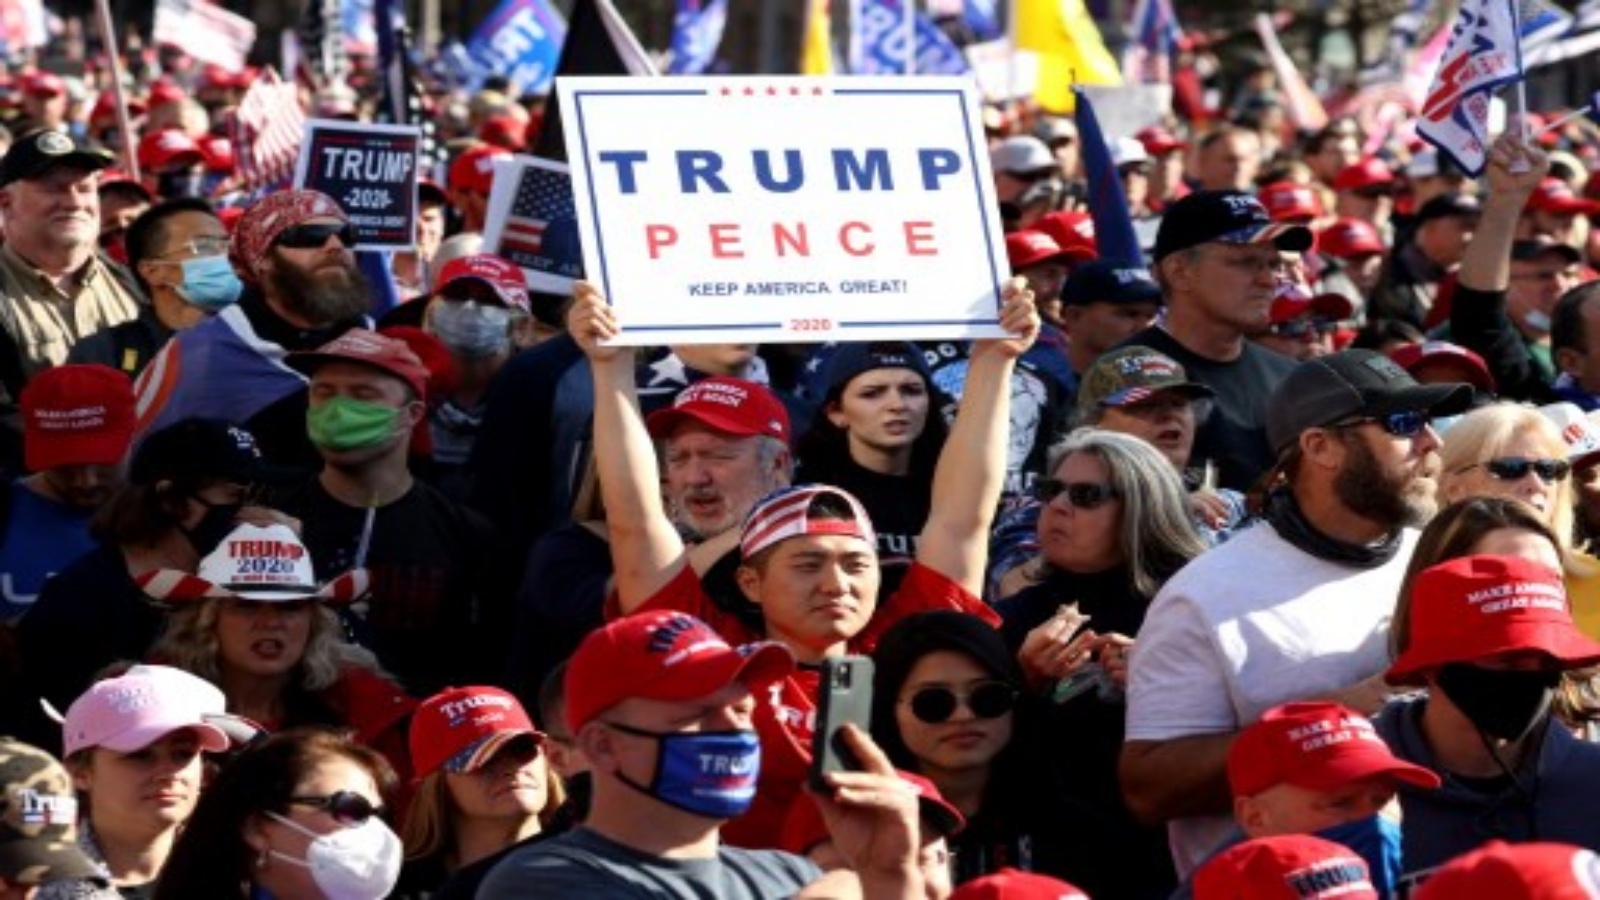 متظاهرون في مسيرة من ساحة الحرية إلى المحكمة العليا، في 14 نوفمبر 2020 في واشنطن العاصمة. أنصار الرئيس الأمريكي دونالد ترامب يسيرون للاحتجاج على نتائج الانتخابات الرئاسية لعام 2020